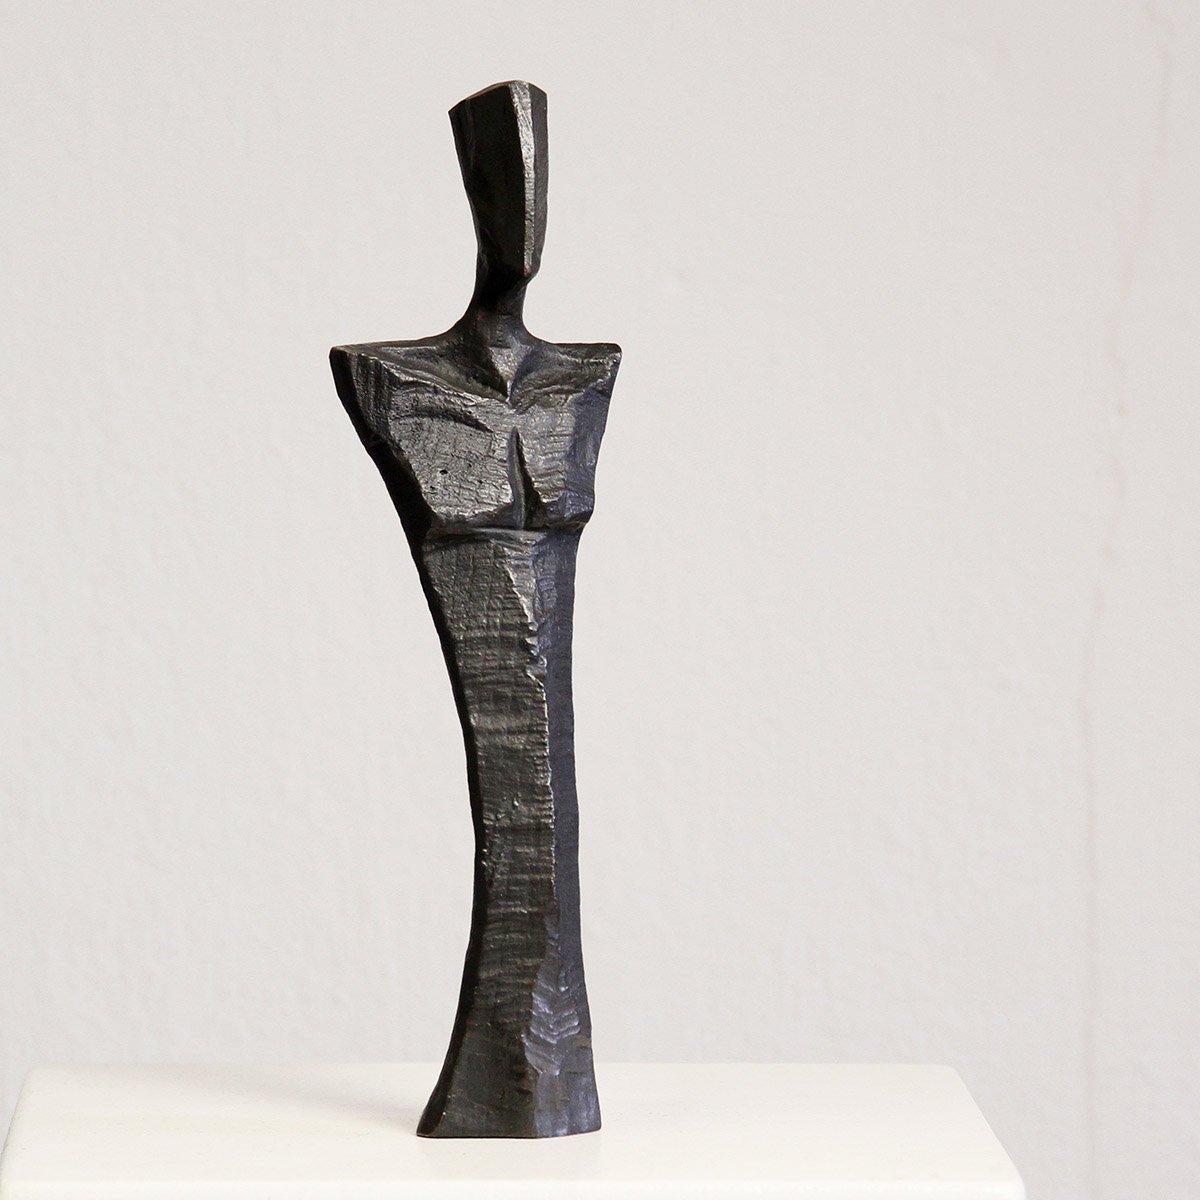 Torso der Amici  von Nando Kallweit 

Bronzeskulptur, Auflage: 50 Stück

Oft gepaart mit dem weiblichen Figurentorso von Donna

Abmessungen: 26cm x 7cm x 4cm